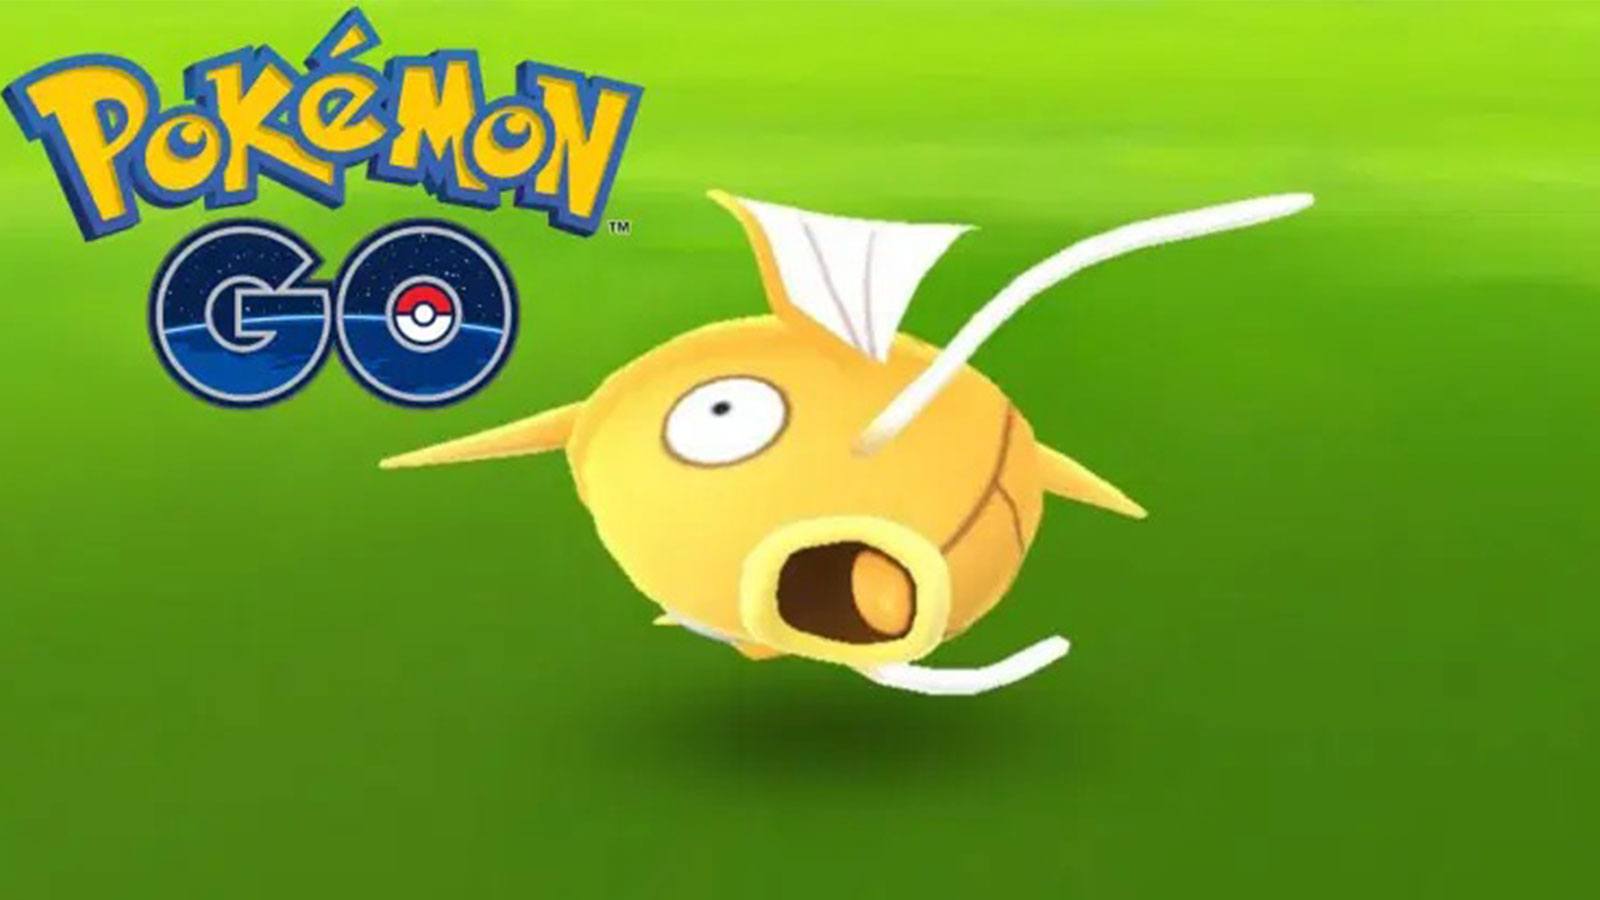 Pokémon Go magicarpe shiny